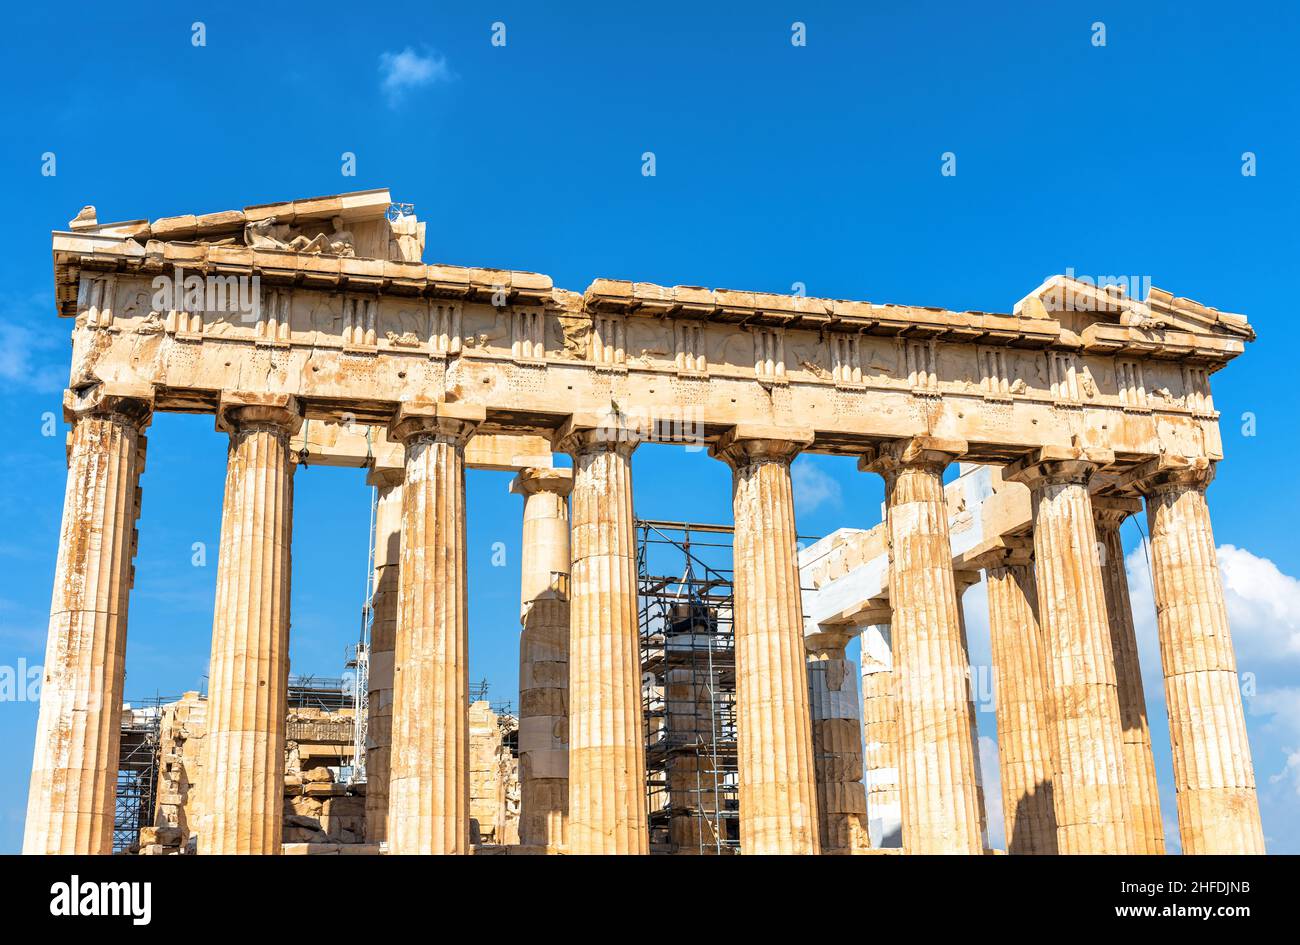 Partenone sull'Acropoli di Atene, Grecia, Europa. E' il principale punto di riferimento storico di Atene. Famose rovine del tempio, antico monumento greco. Concetto di tim Foto Stock